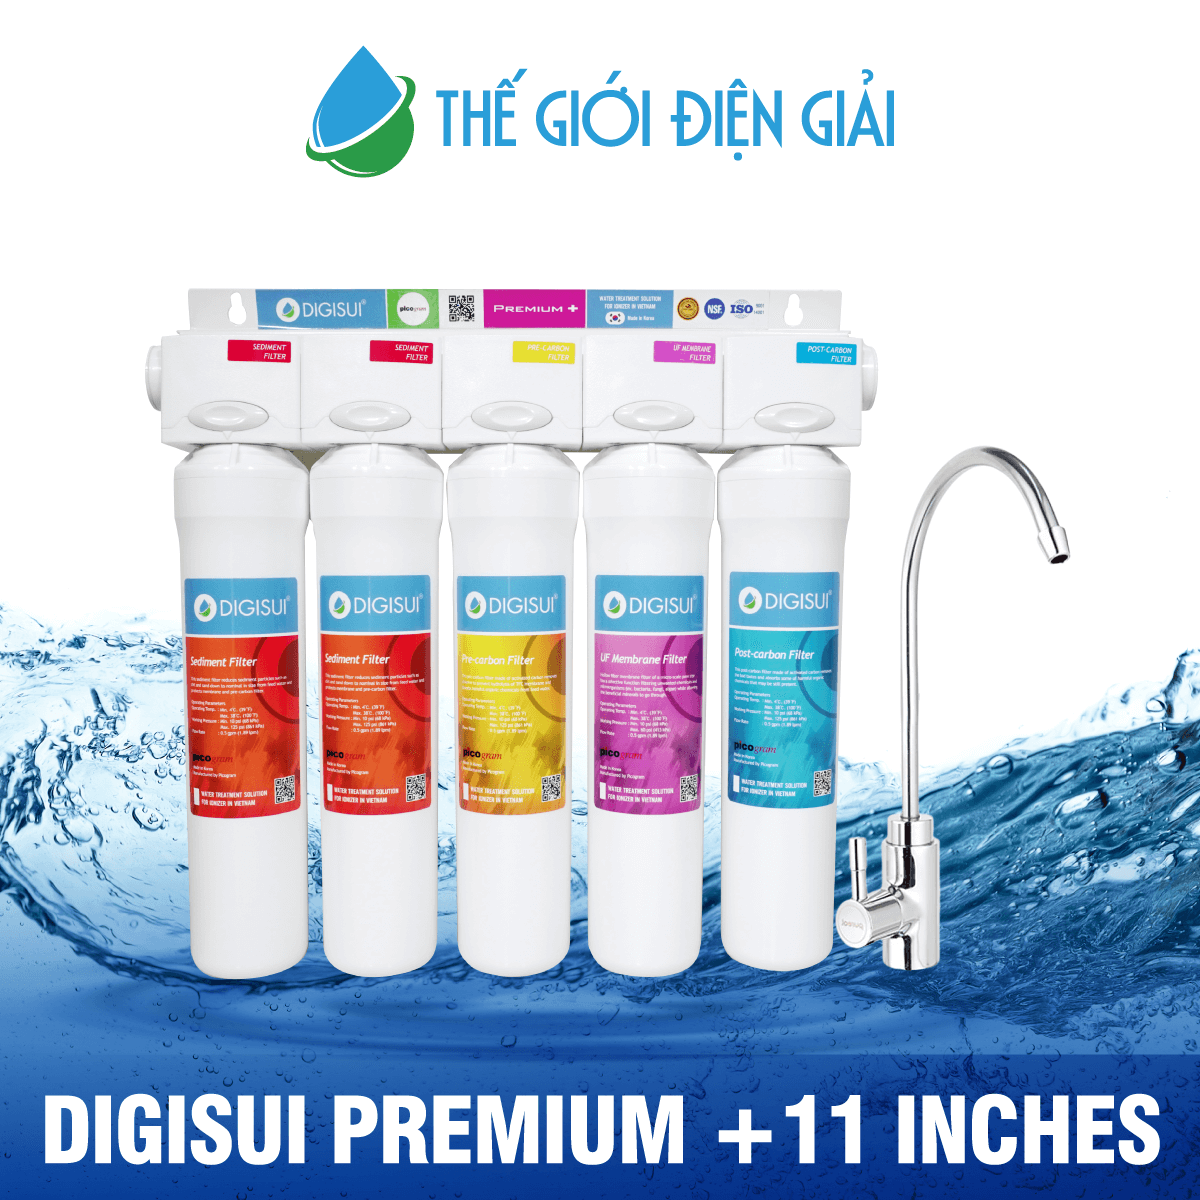  Máy lọc nước DigiSui Premium + 11 inches được nghiên cứu dành riêng cho Việt Nam